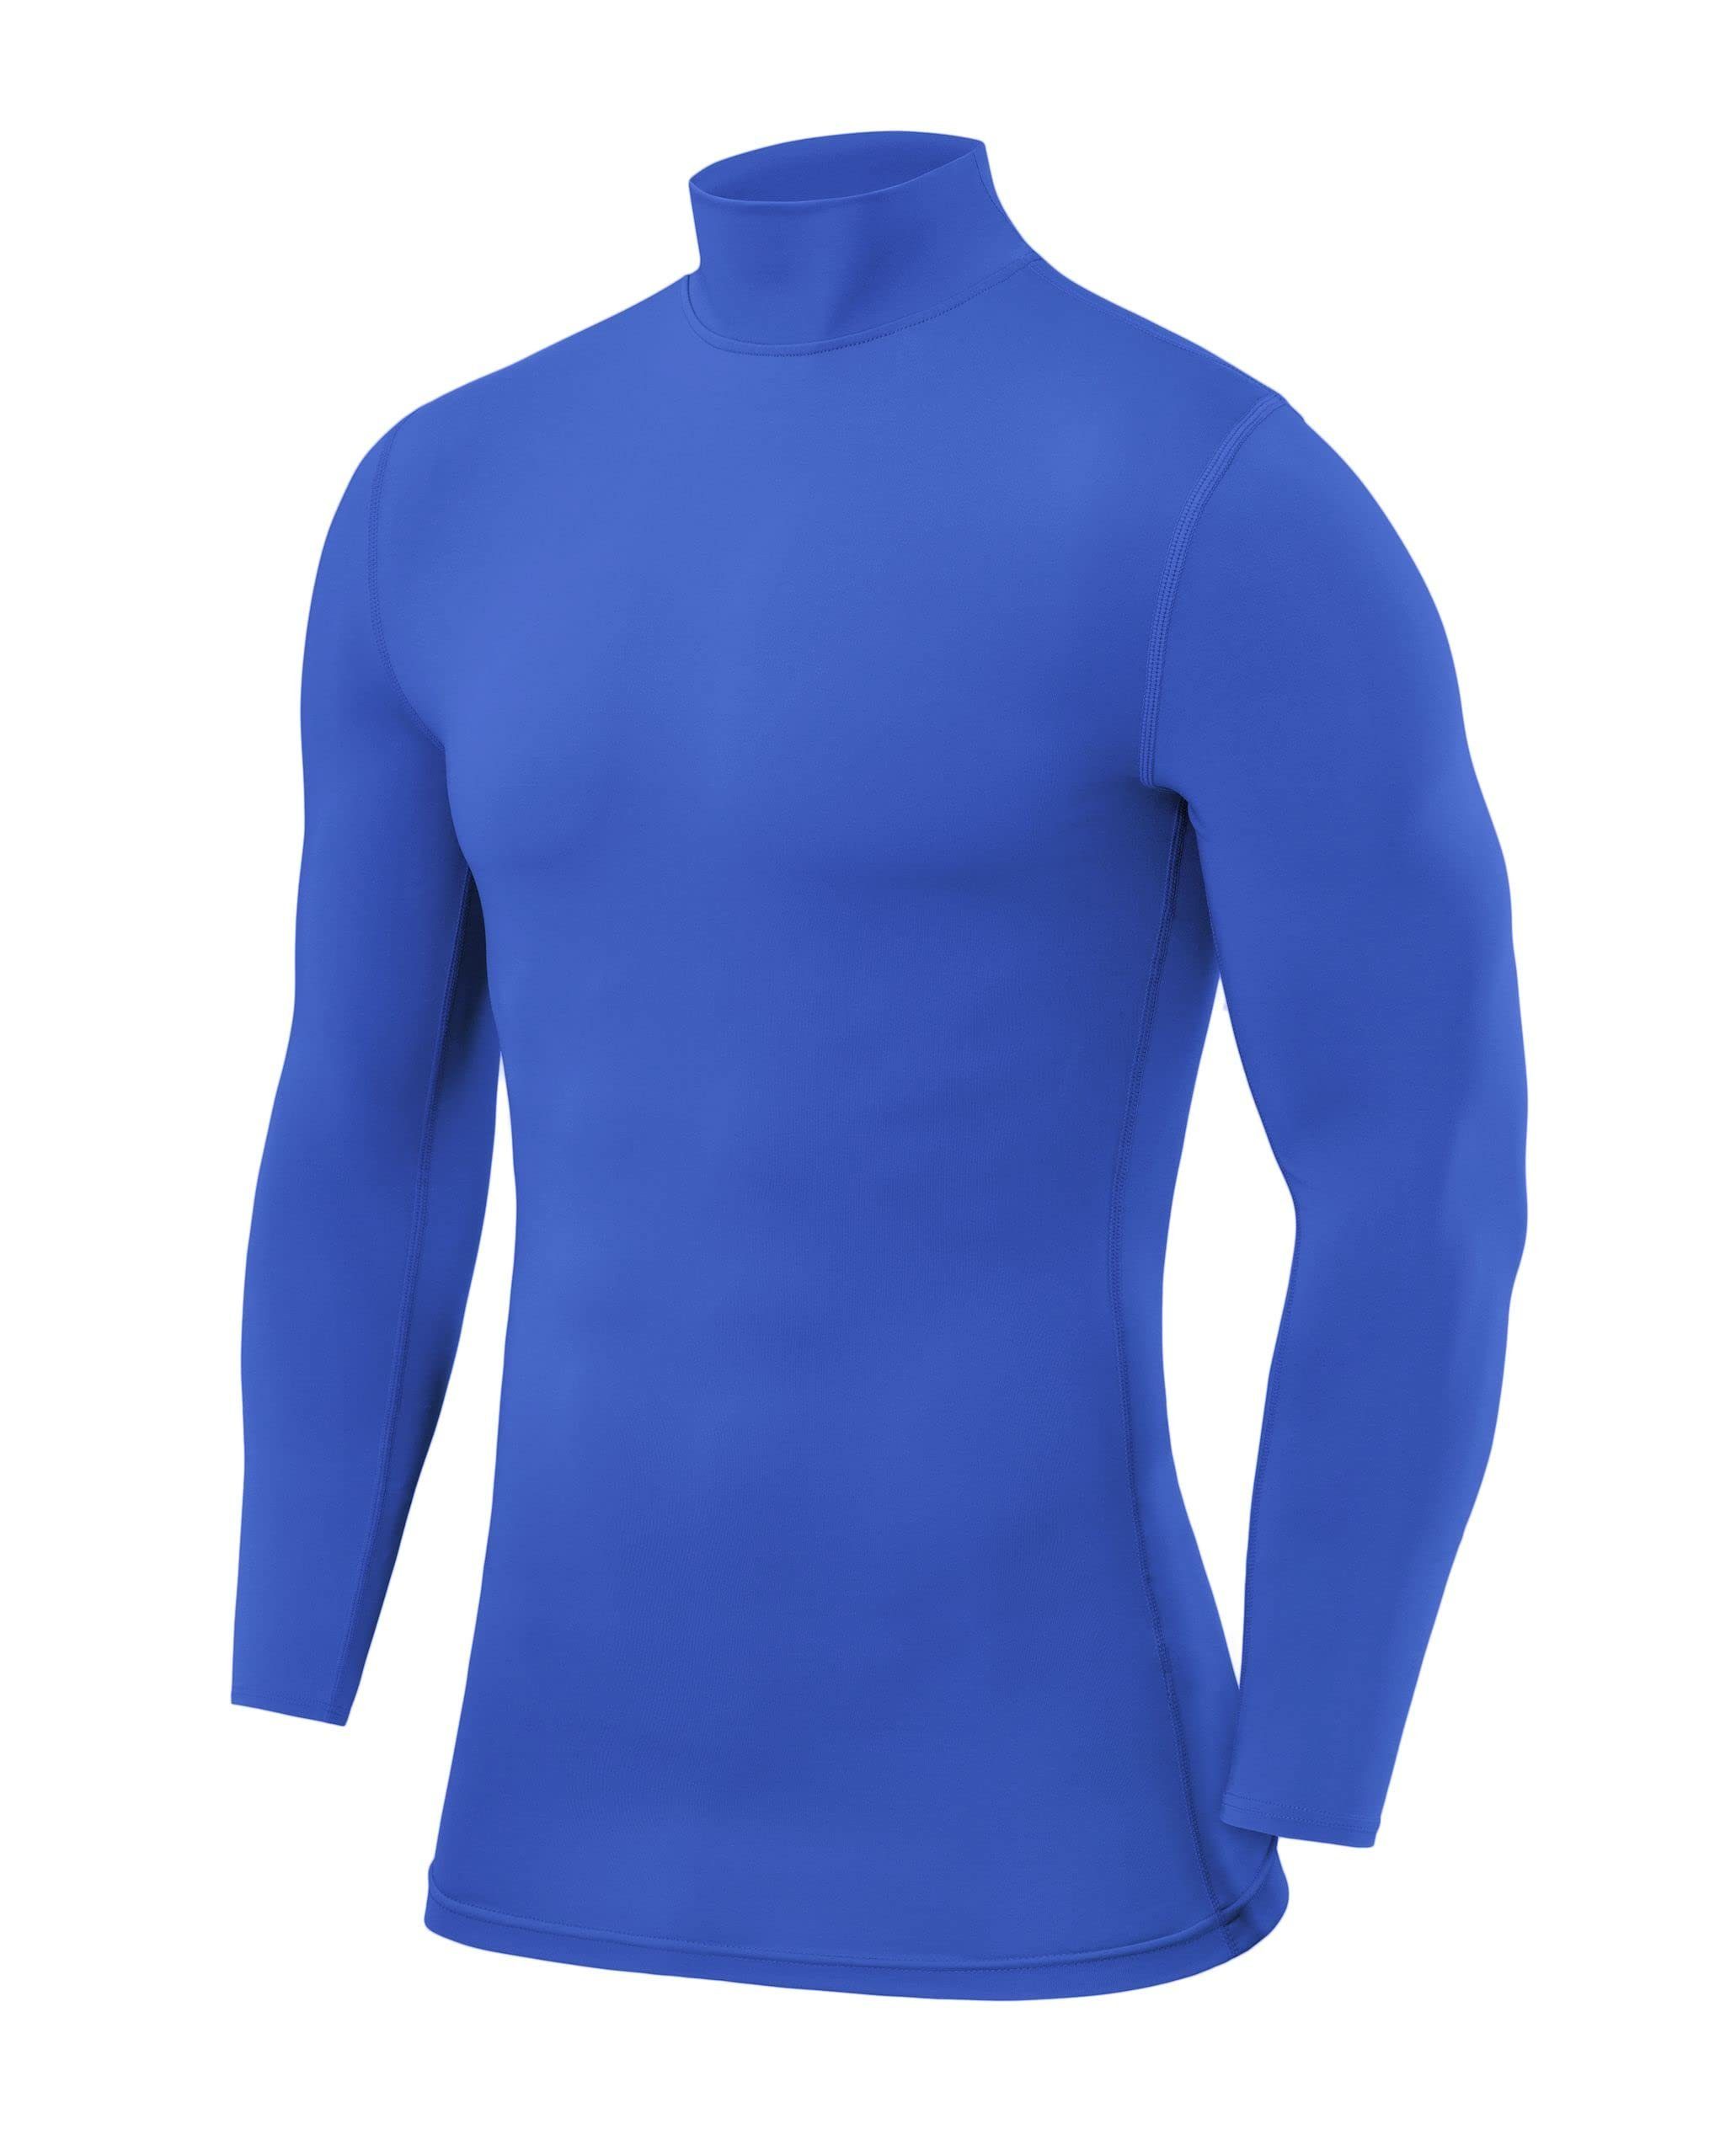 POWERLAYER Langarmshirt PowerLayer Herren Kompressionsoberteil Langarm Mock Neck - Blau | Shirts